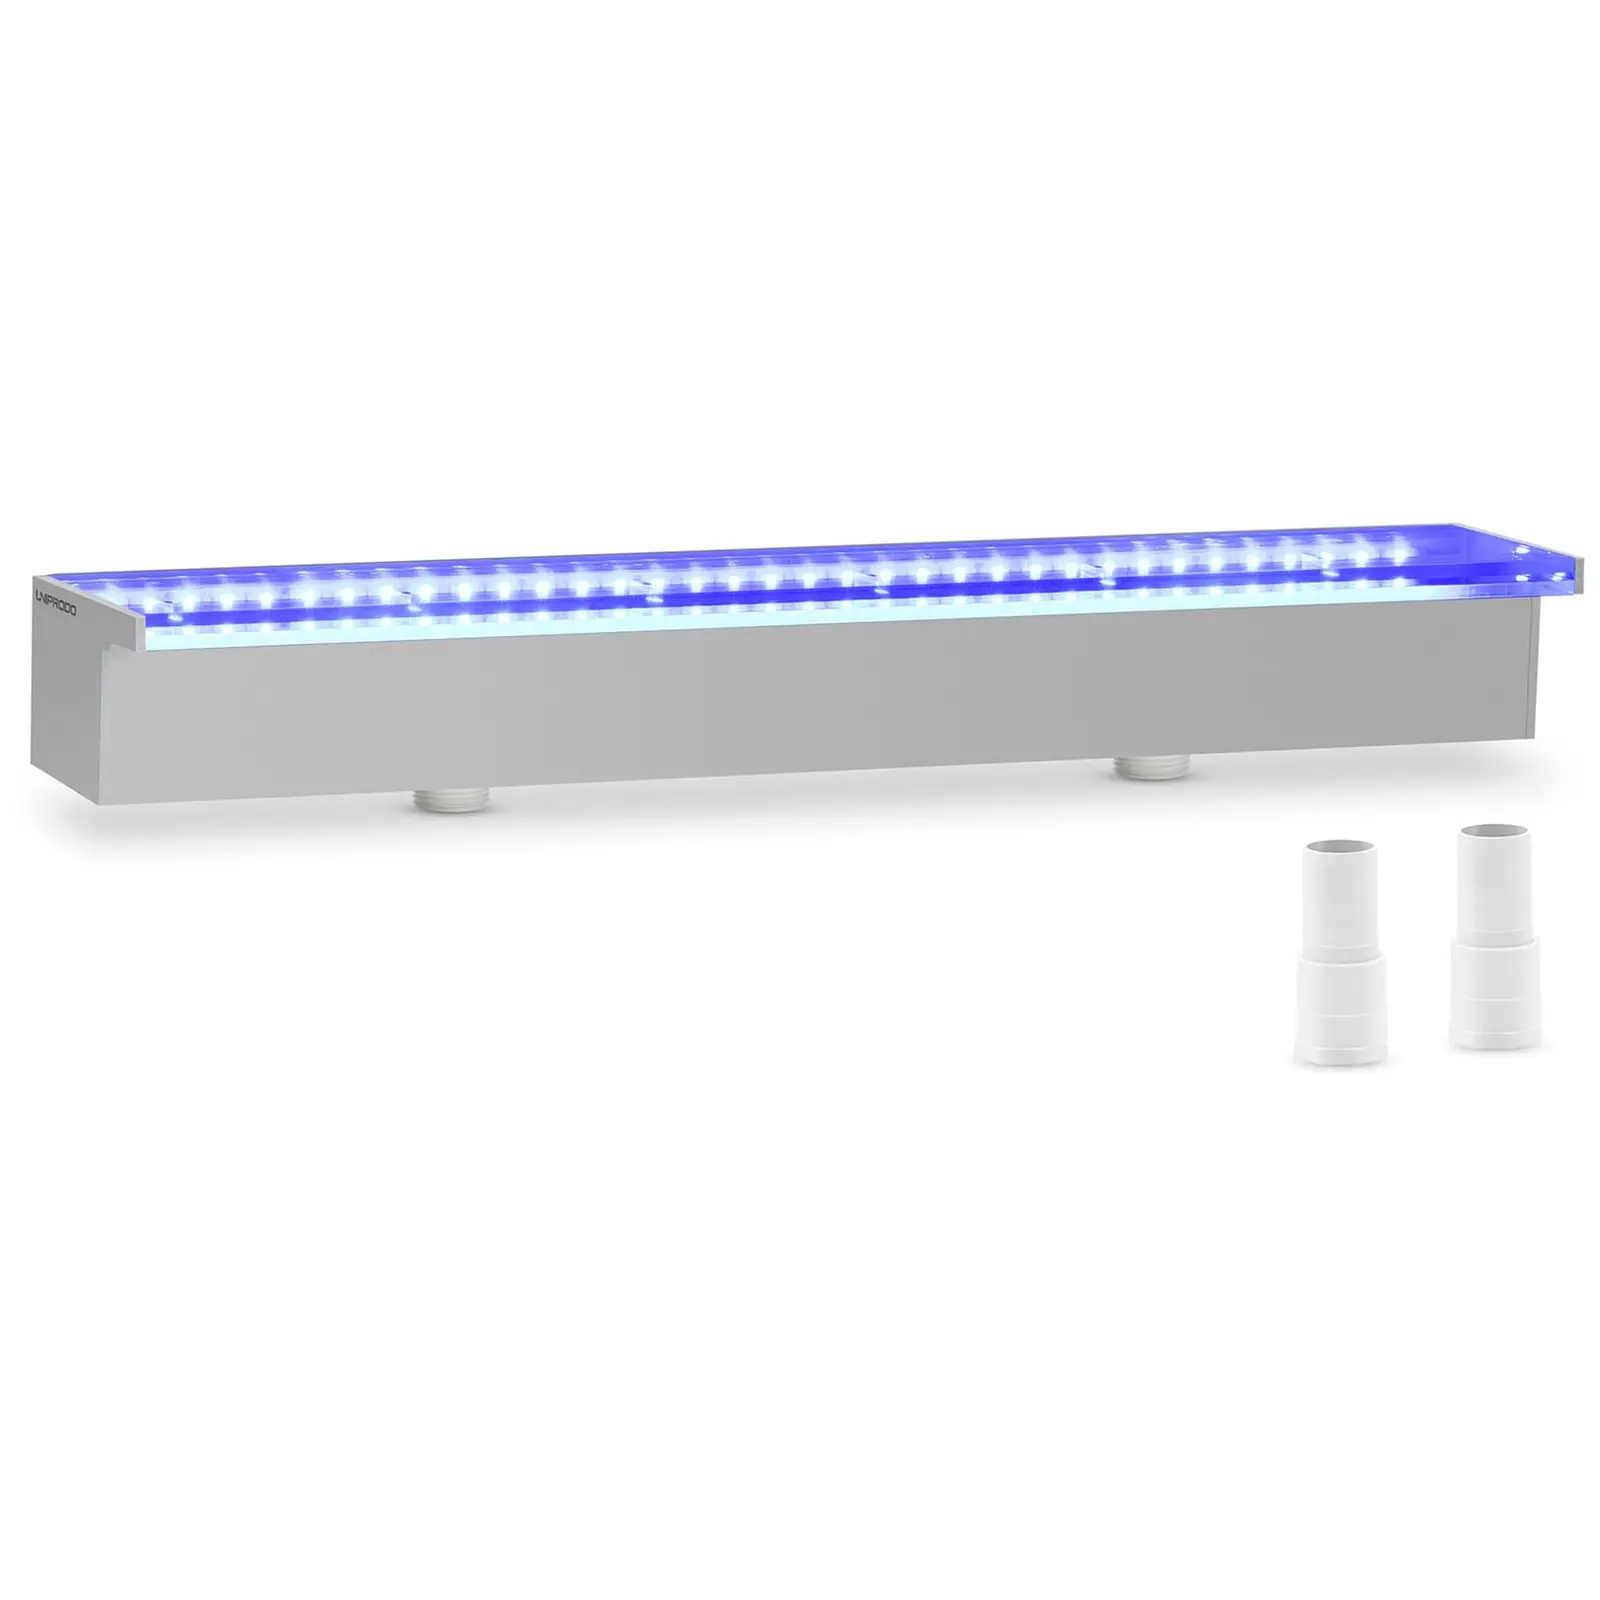 Bico de queda de água - cm - iluminação LED - azul/branco - saída de água 30 mm